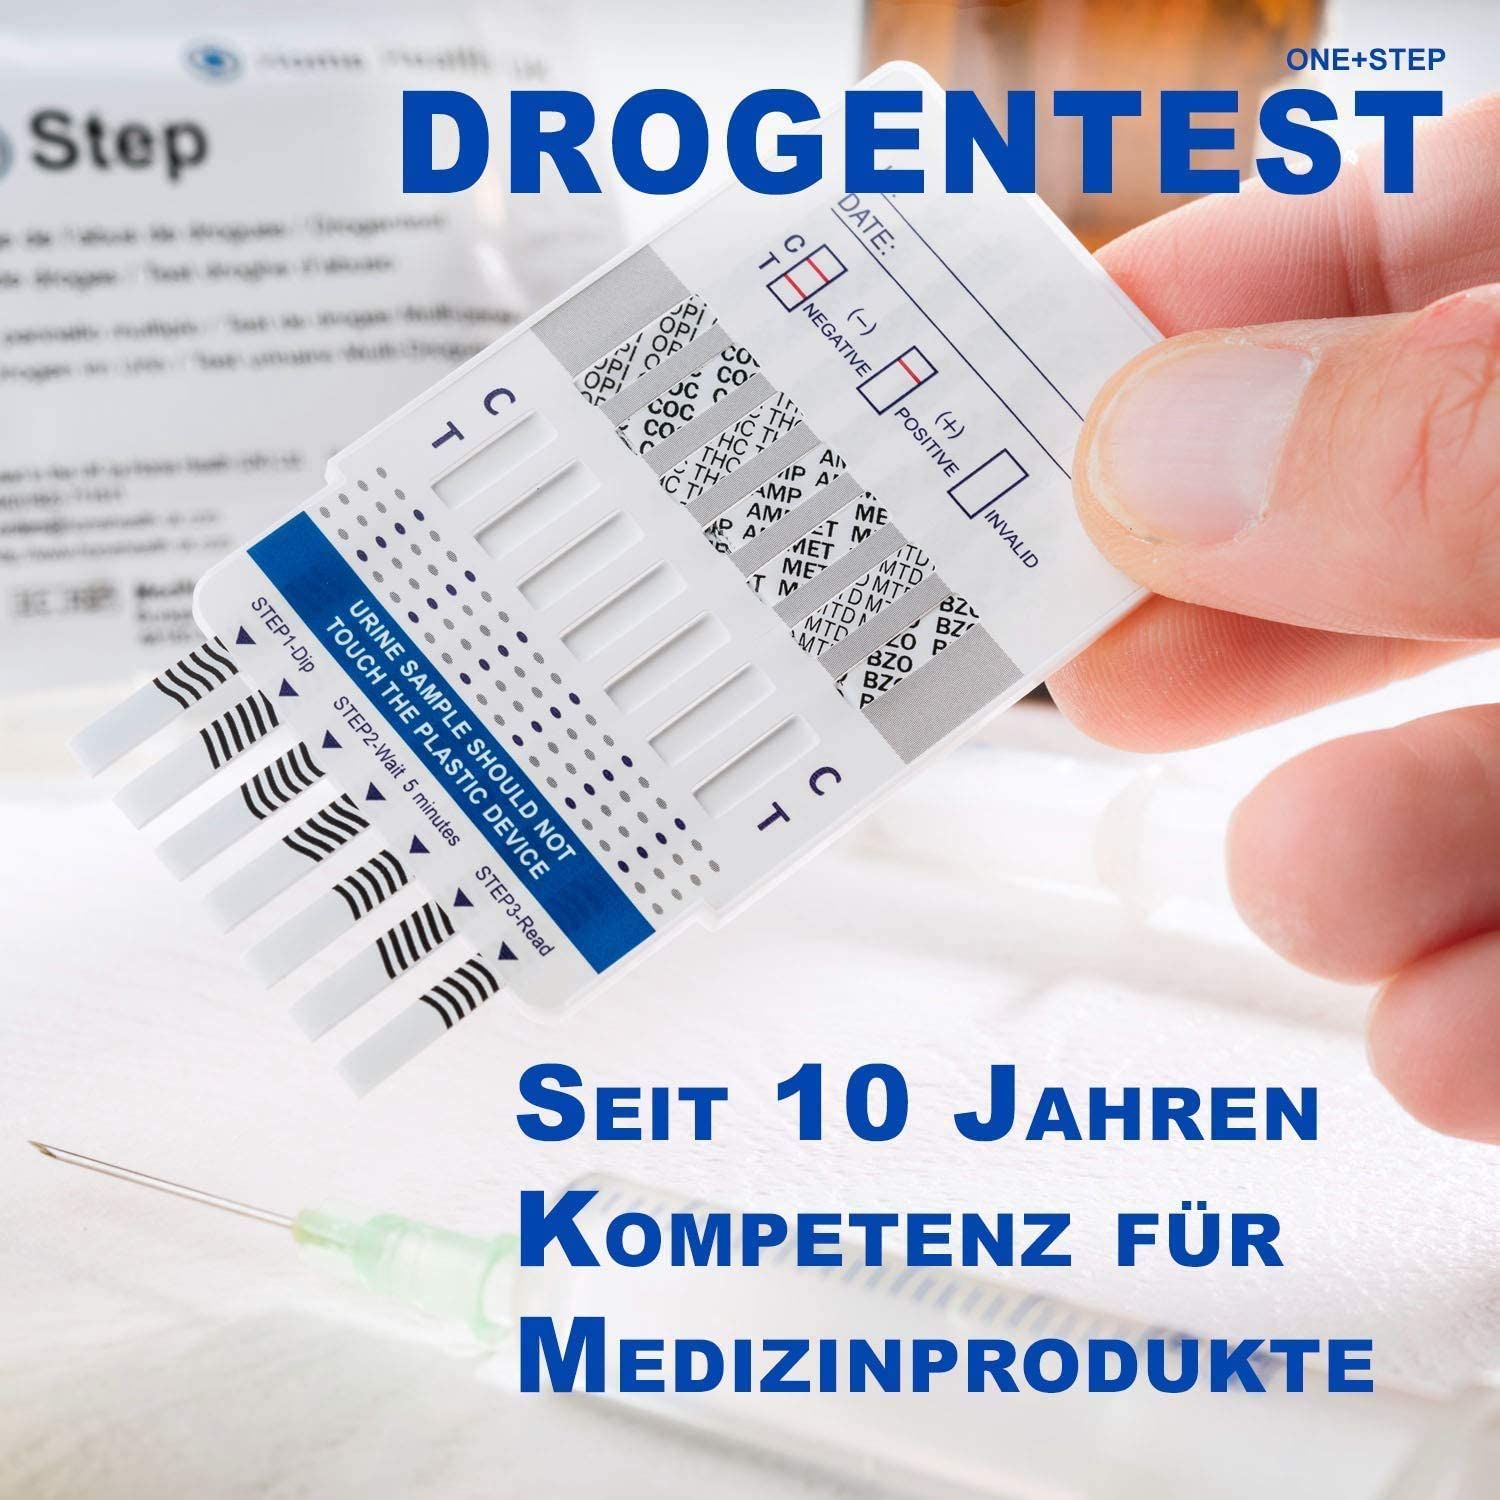 One+Step THC Drogentest-Schnelltest - Selbsttest mit hoher Sensitivität  Cut-off: 20 ng/ml 10 St - SHOP APOTHEKE